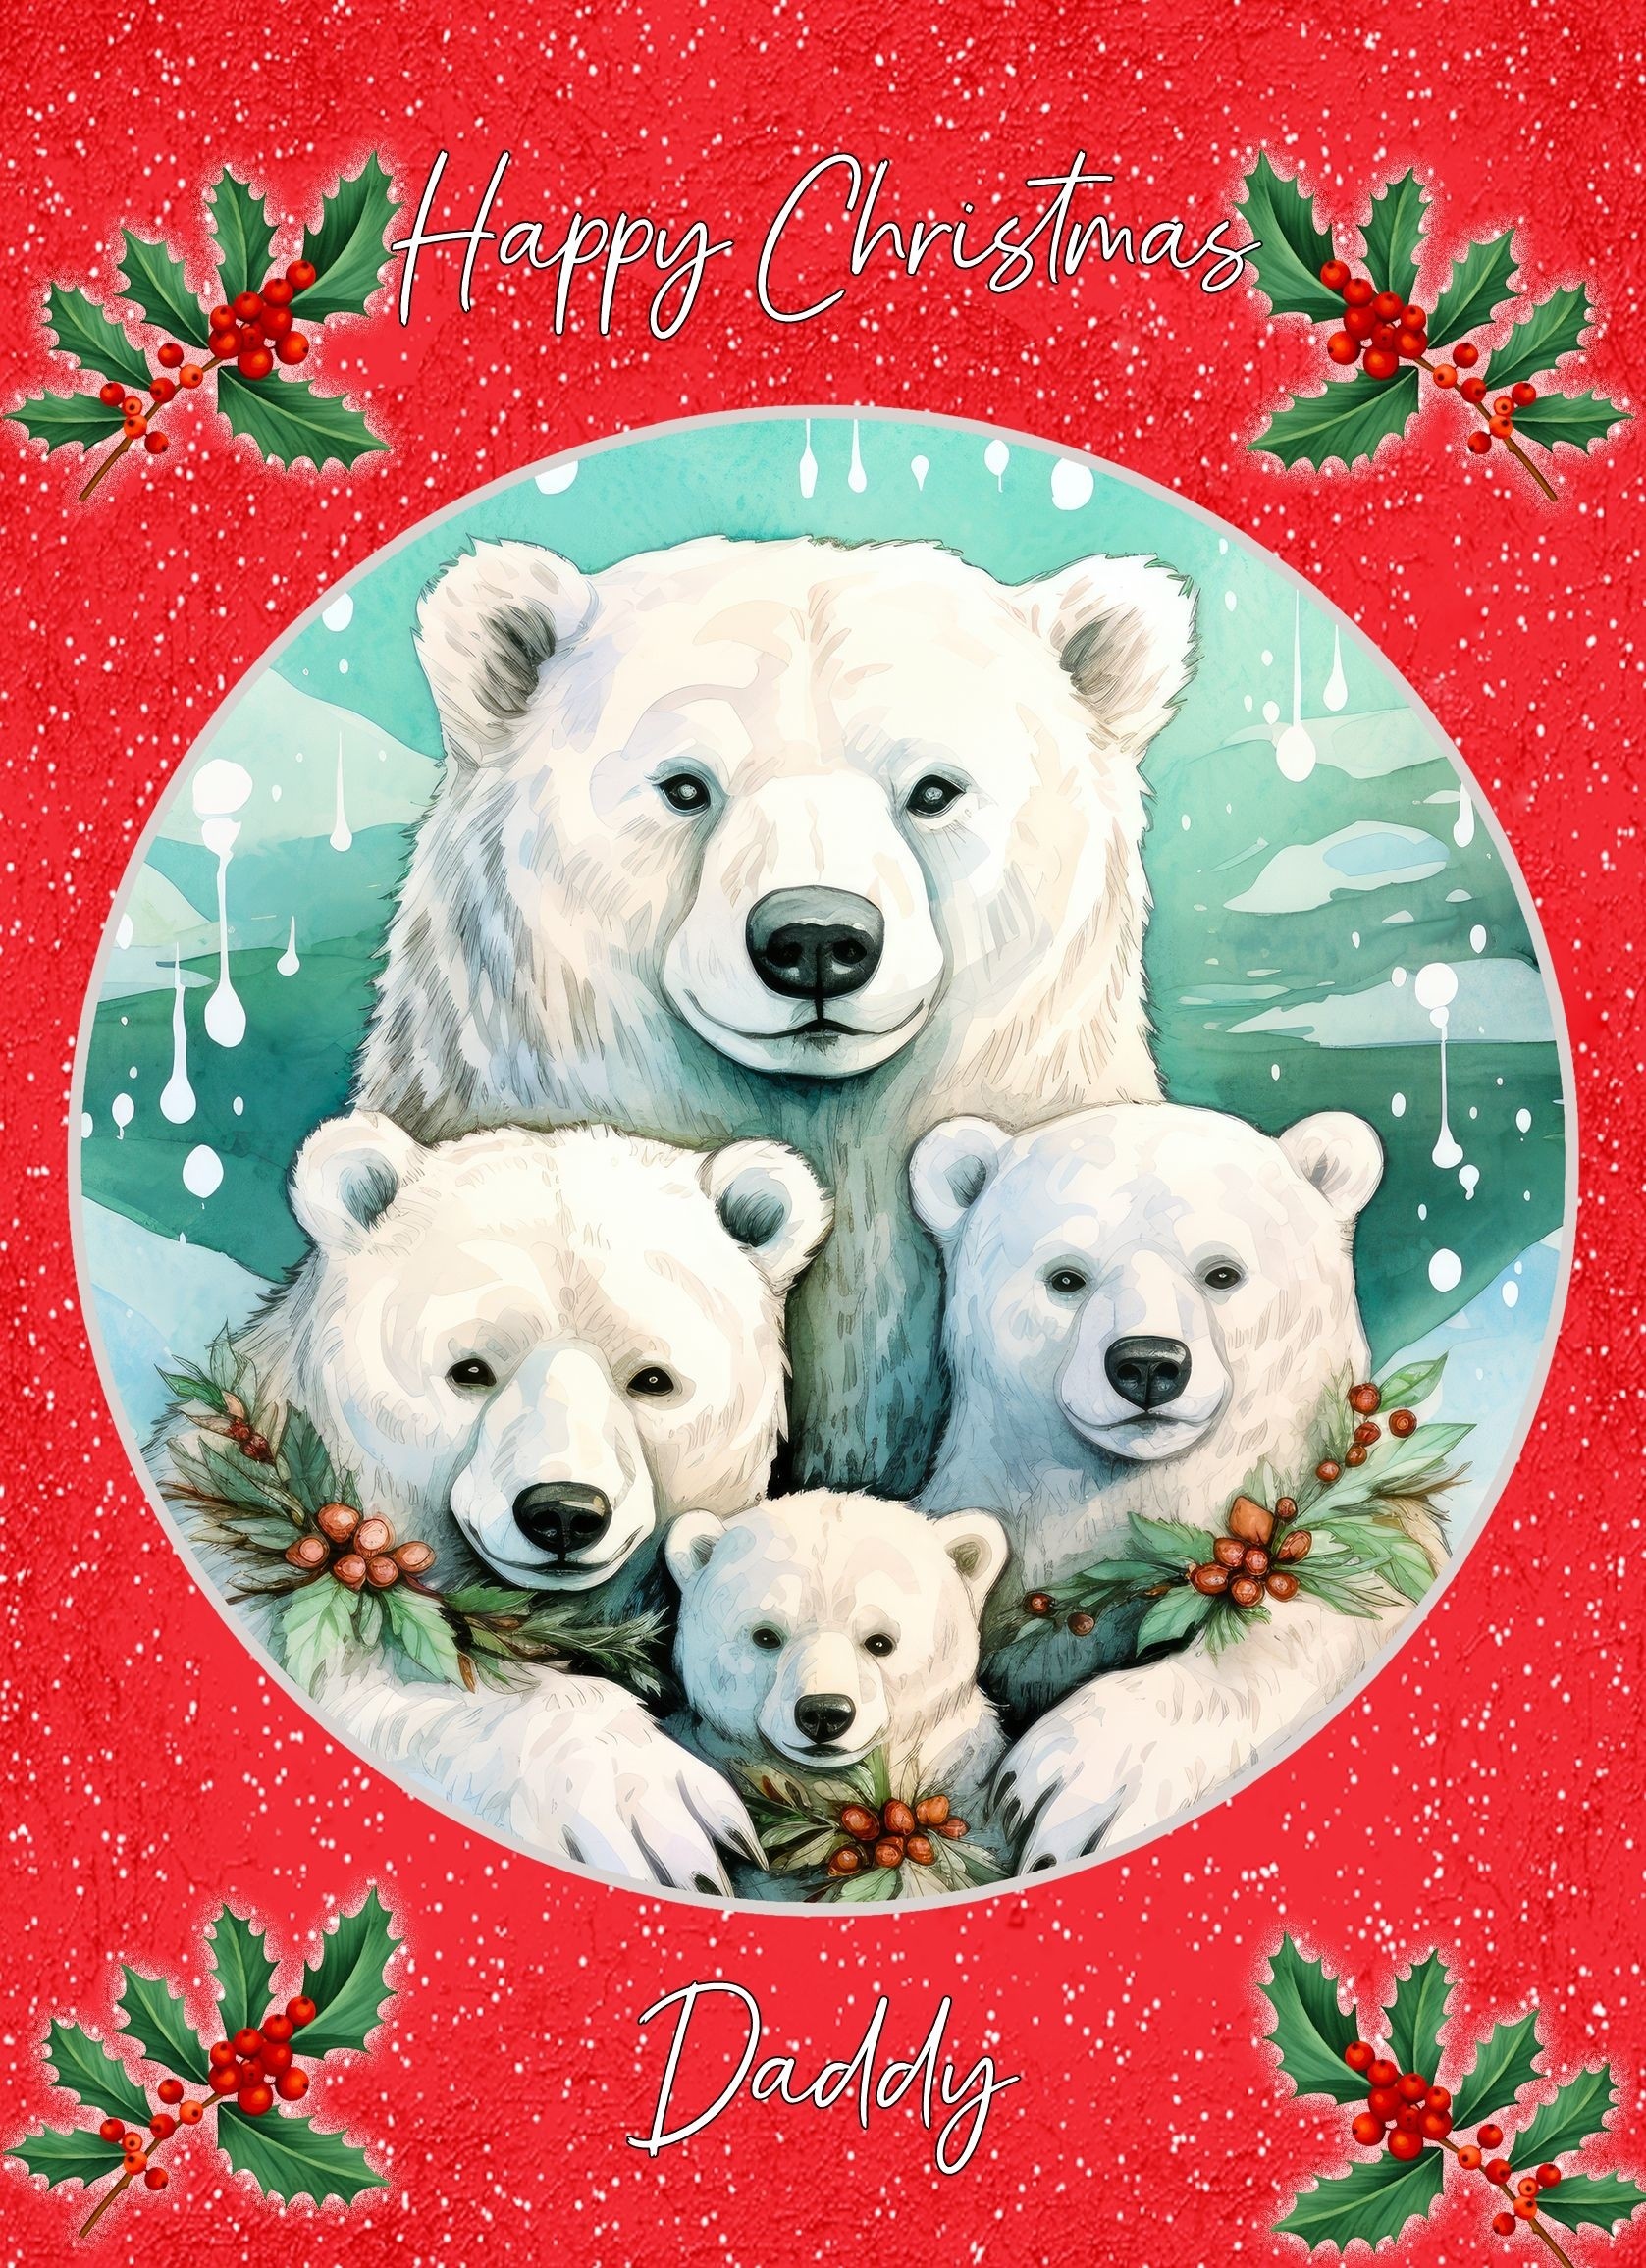 Christmas Card For Daddy (Globe, Polar Bear Family)